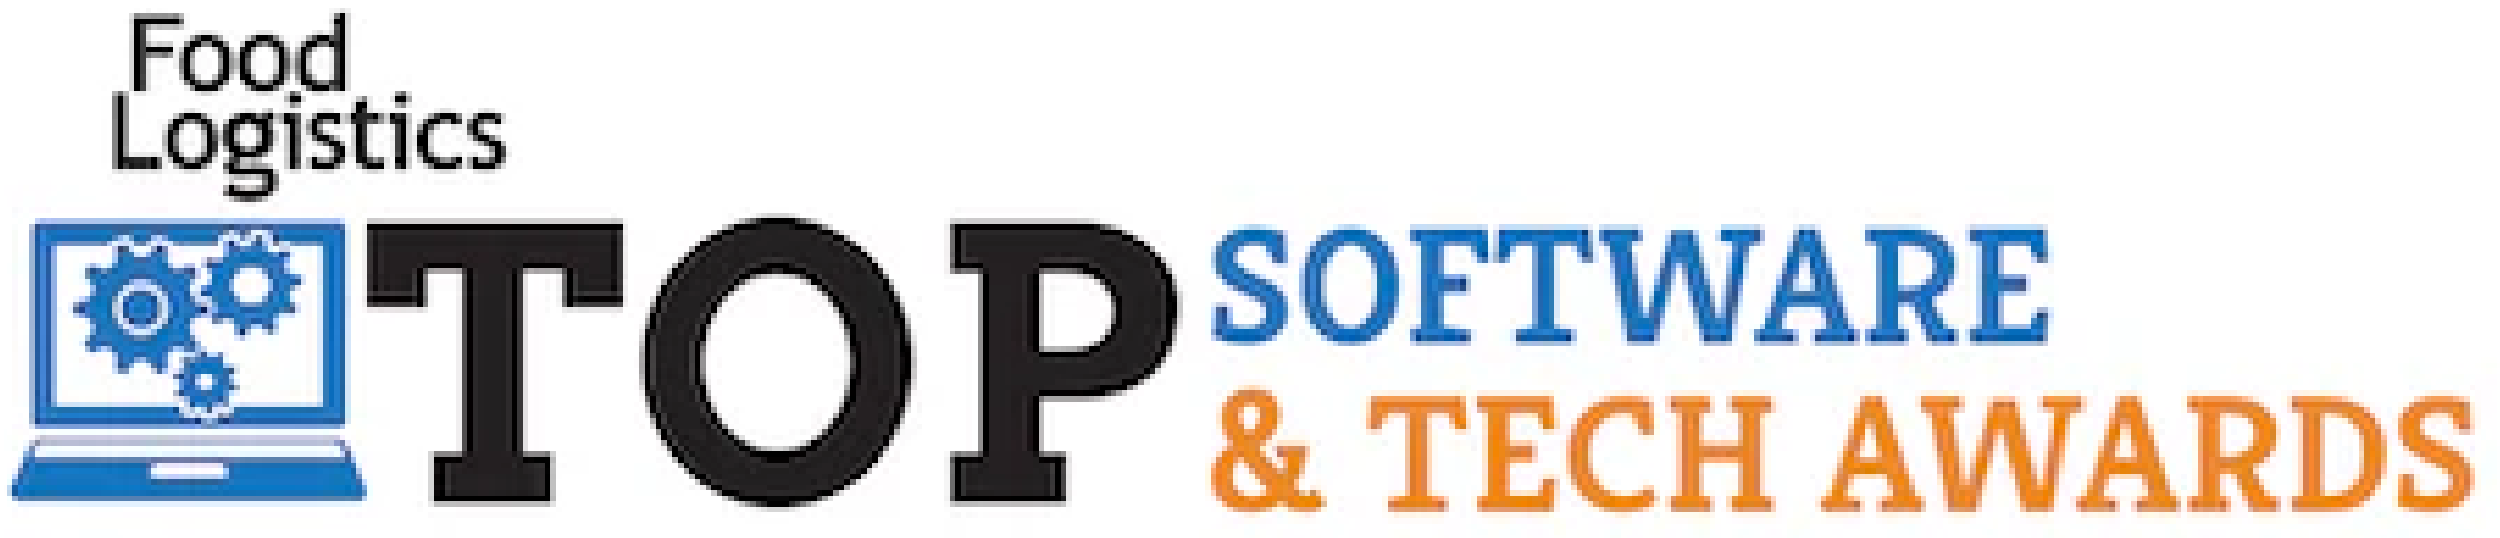 Food Logistics - Top Software & Tech Awards logo